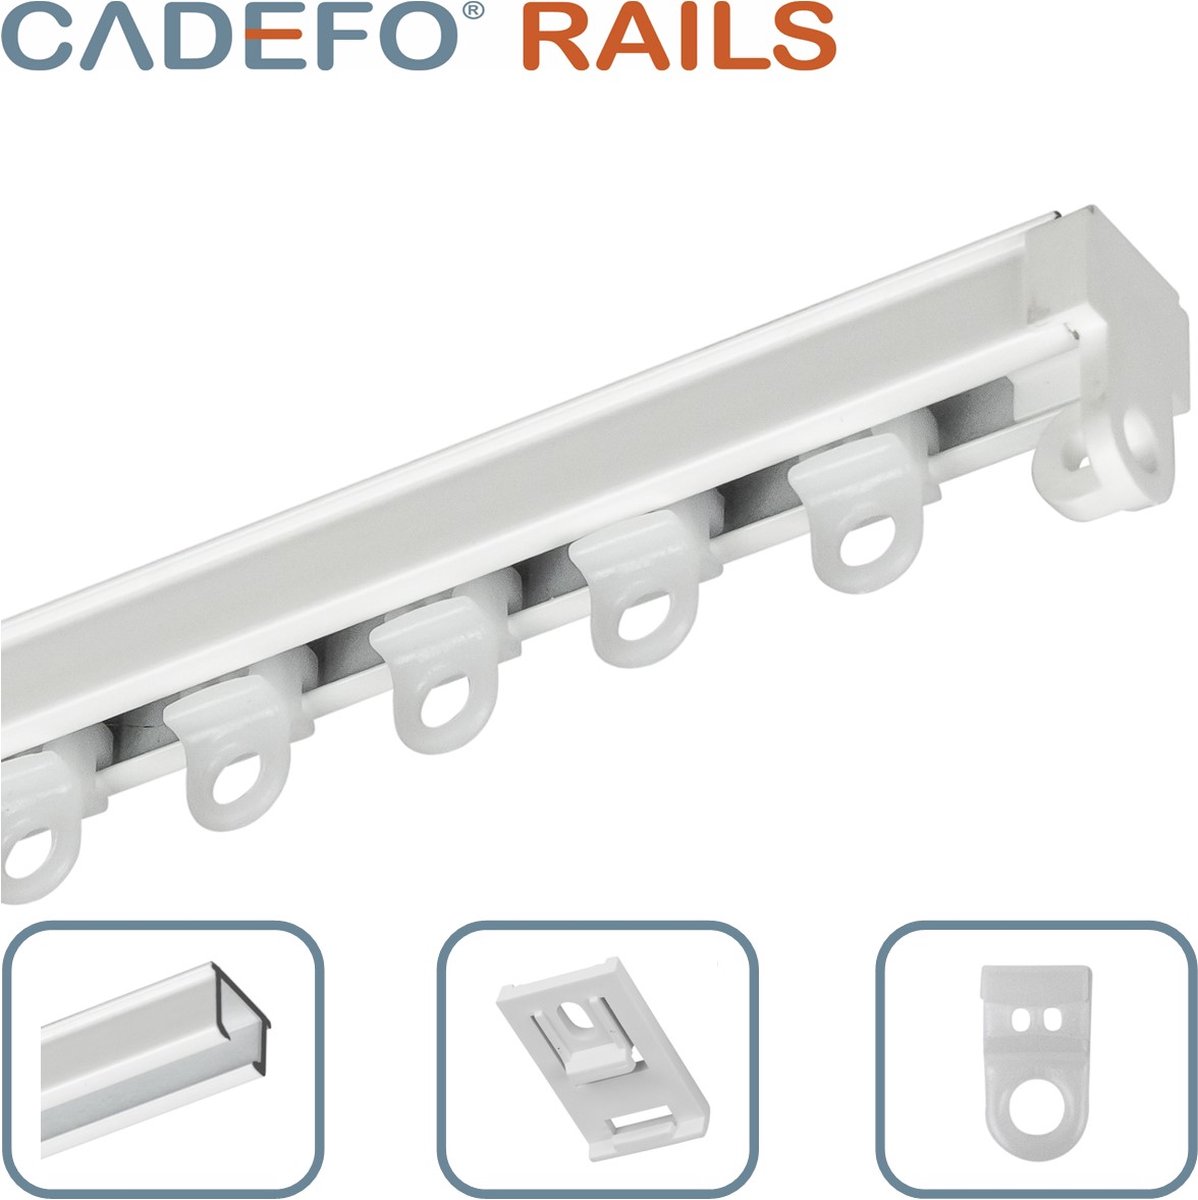 CADEFO RAILS (301 - 350 cm) Gordijnrails - Compleet op maat! - UIT 1 STUK - Leverbaar tot 6 meter - Plafondbevestiging - Lengte 346 cm